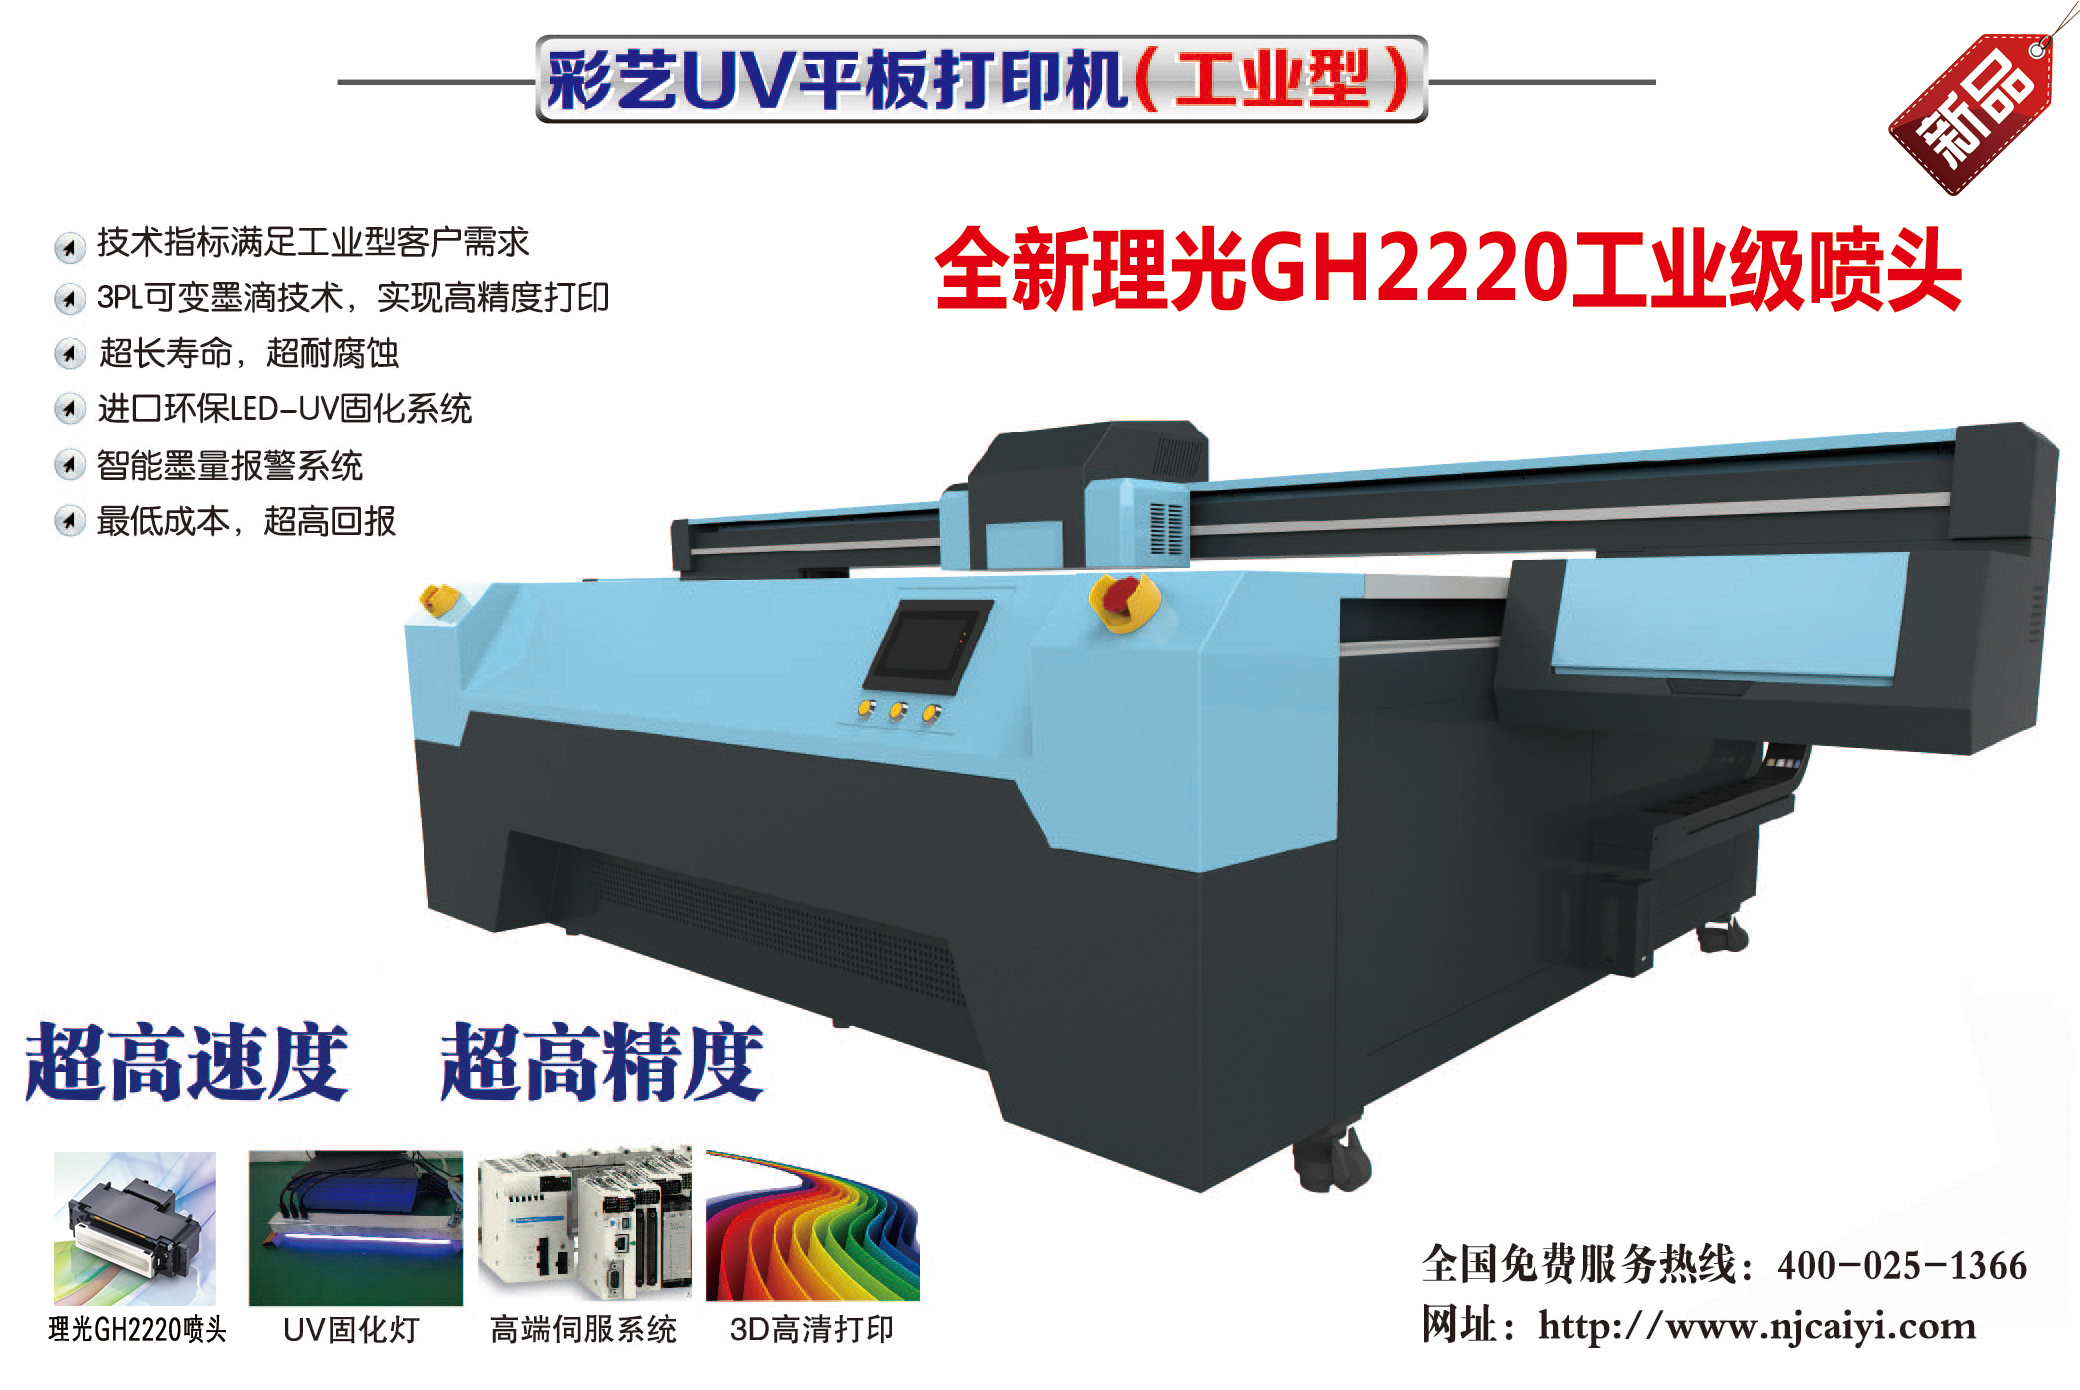 南京彩艺厂家直销UV平板打印机 窗帘打印机UV3030 南京彩艺厂家直销玻璃打印机